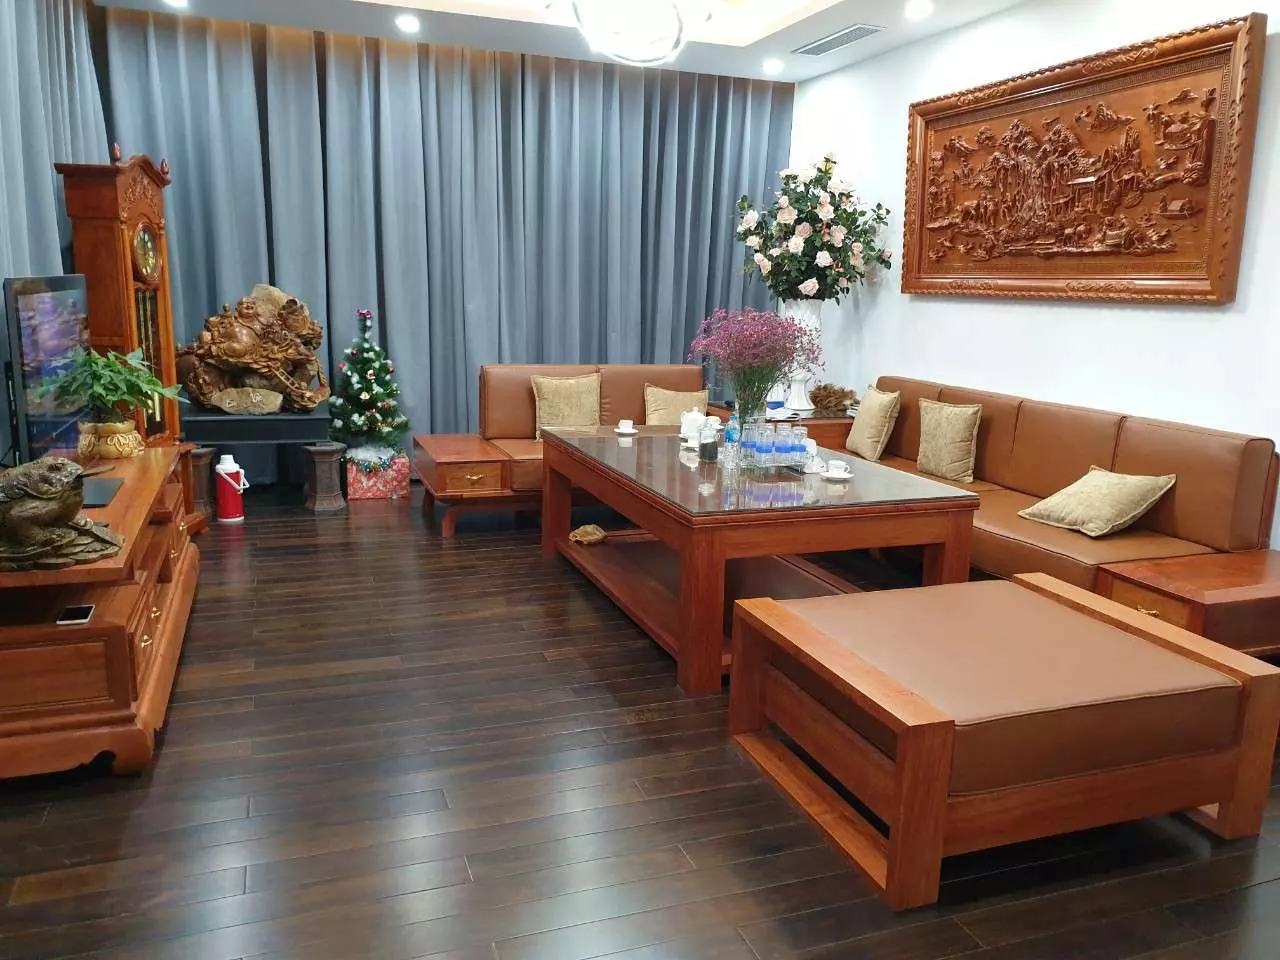 Sàn gỗ làm bằng gỗ Chiu Liu Lào có màu sắc tự nhiên và bóng đẹp